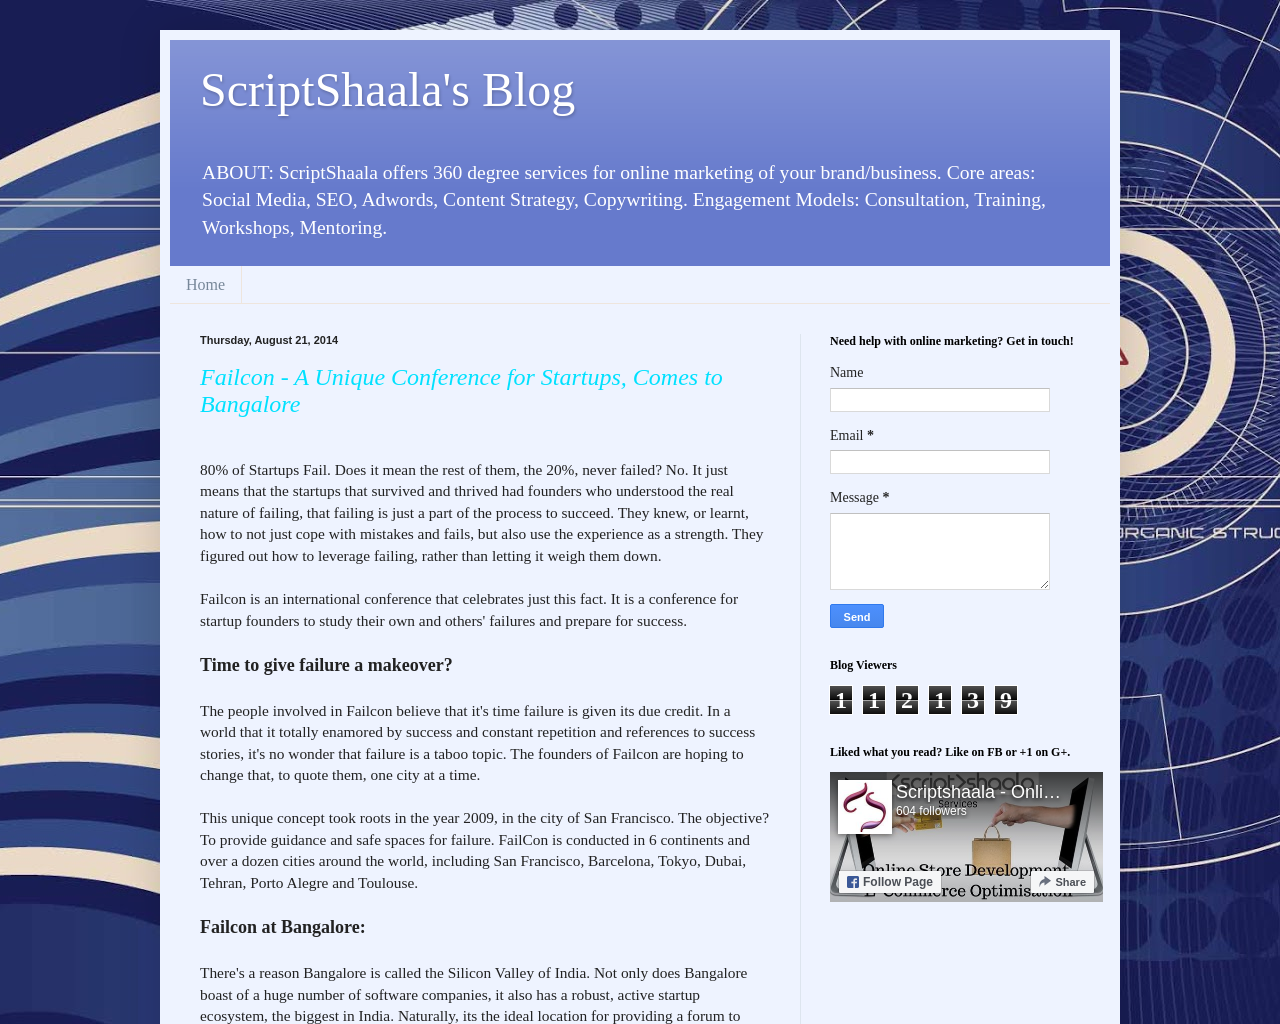 Scriptshaala Writing Services